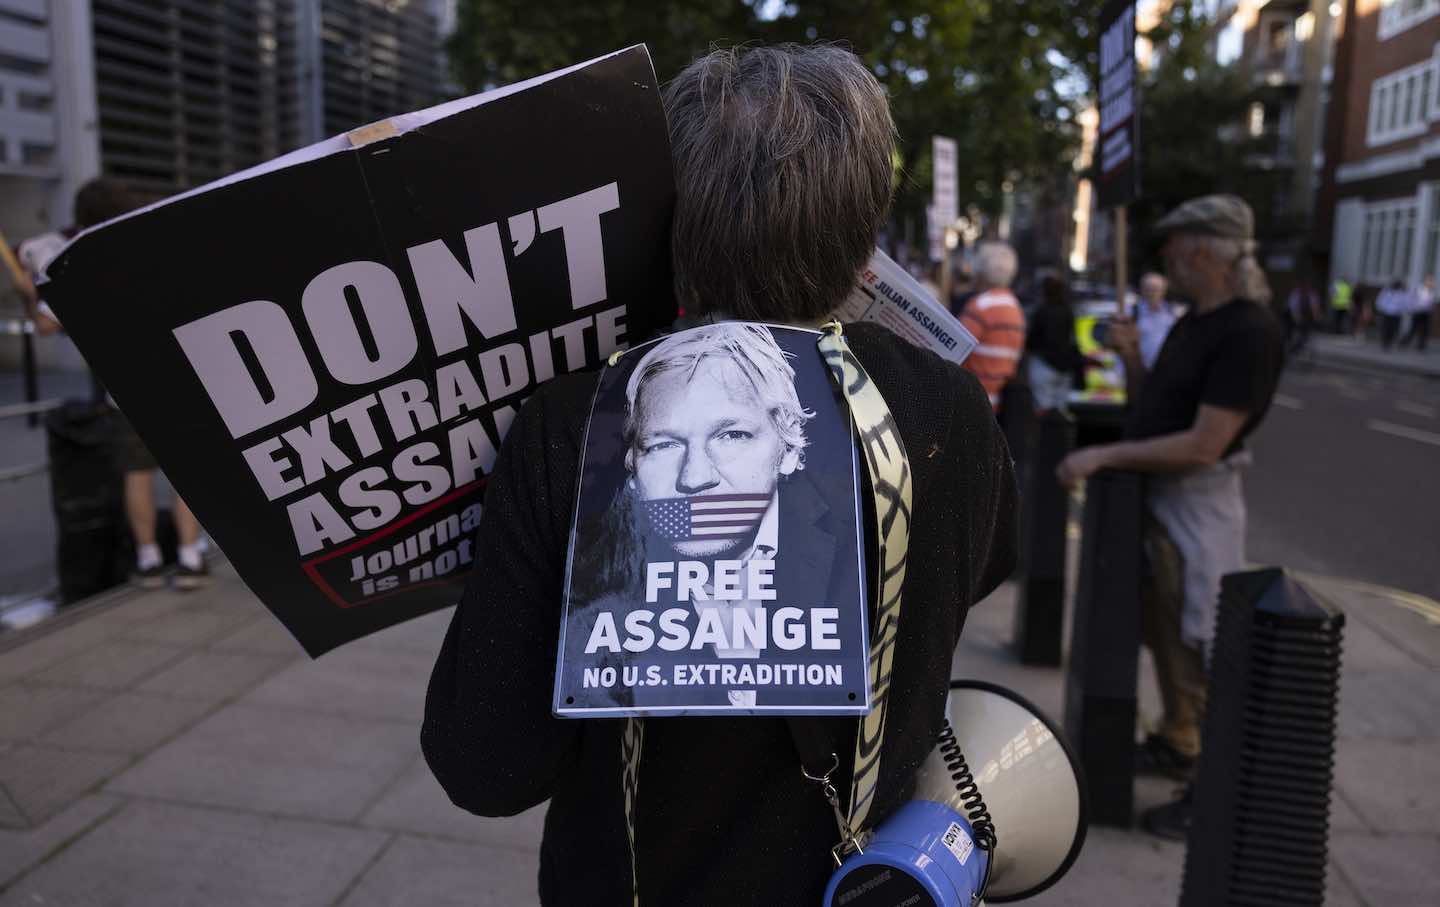 Protesters demanding Julian Assange's release